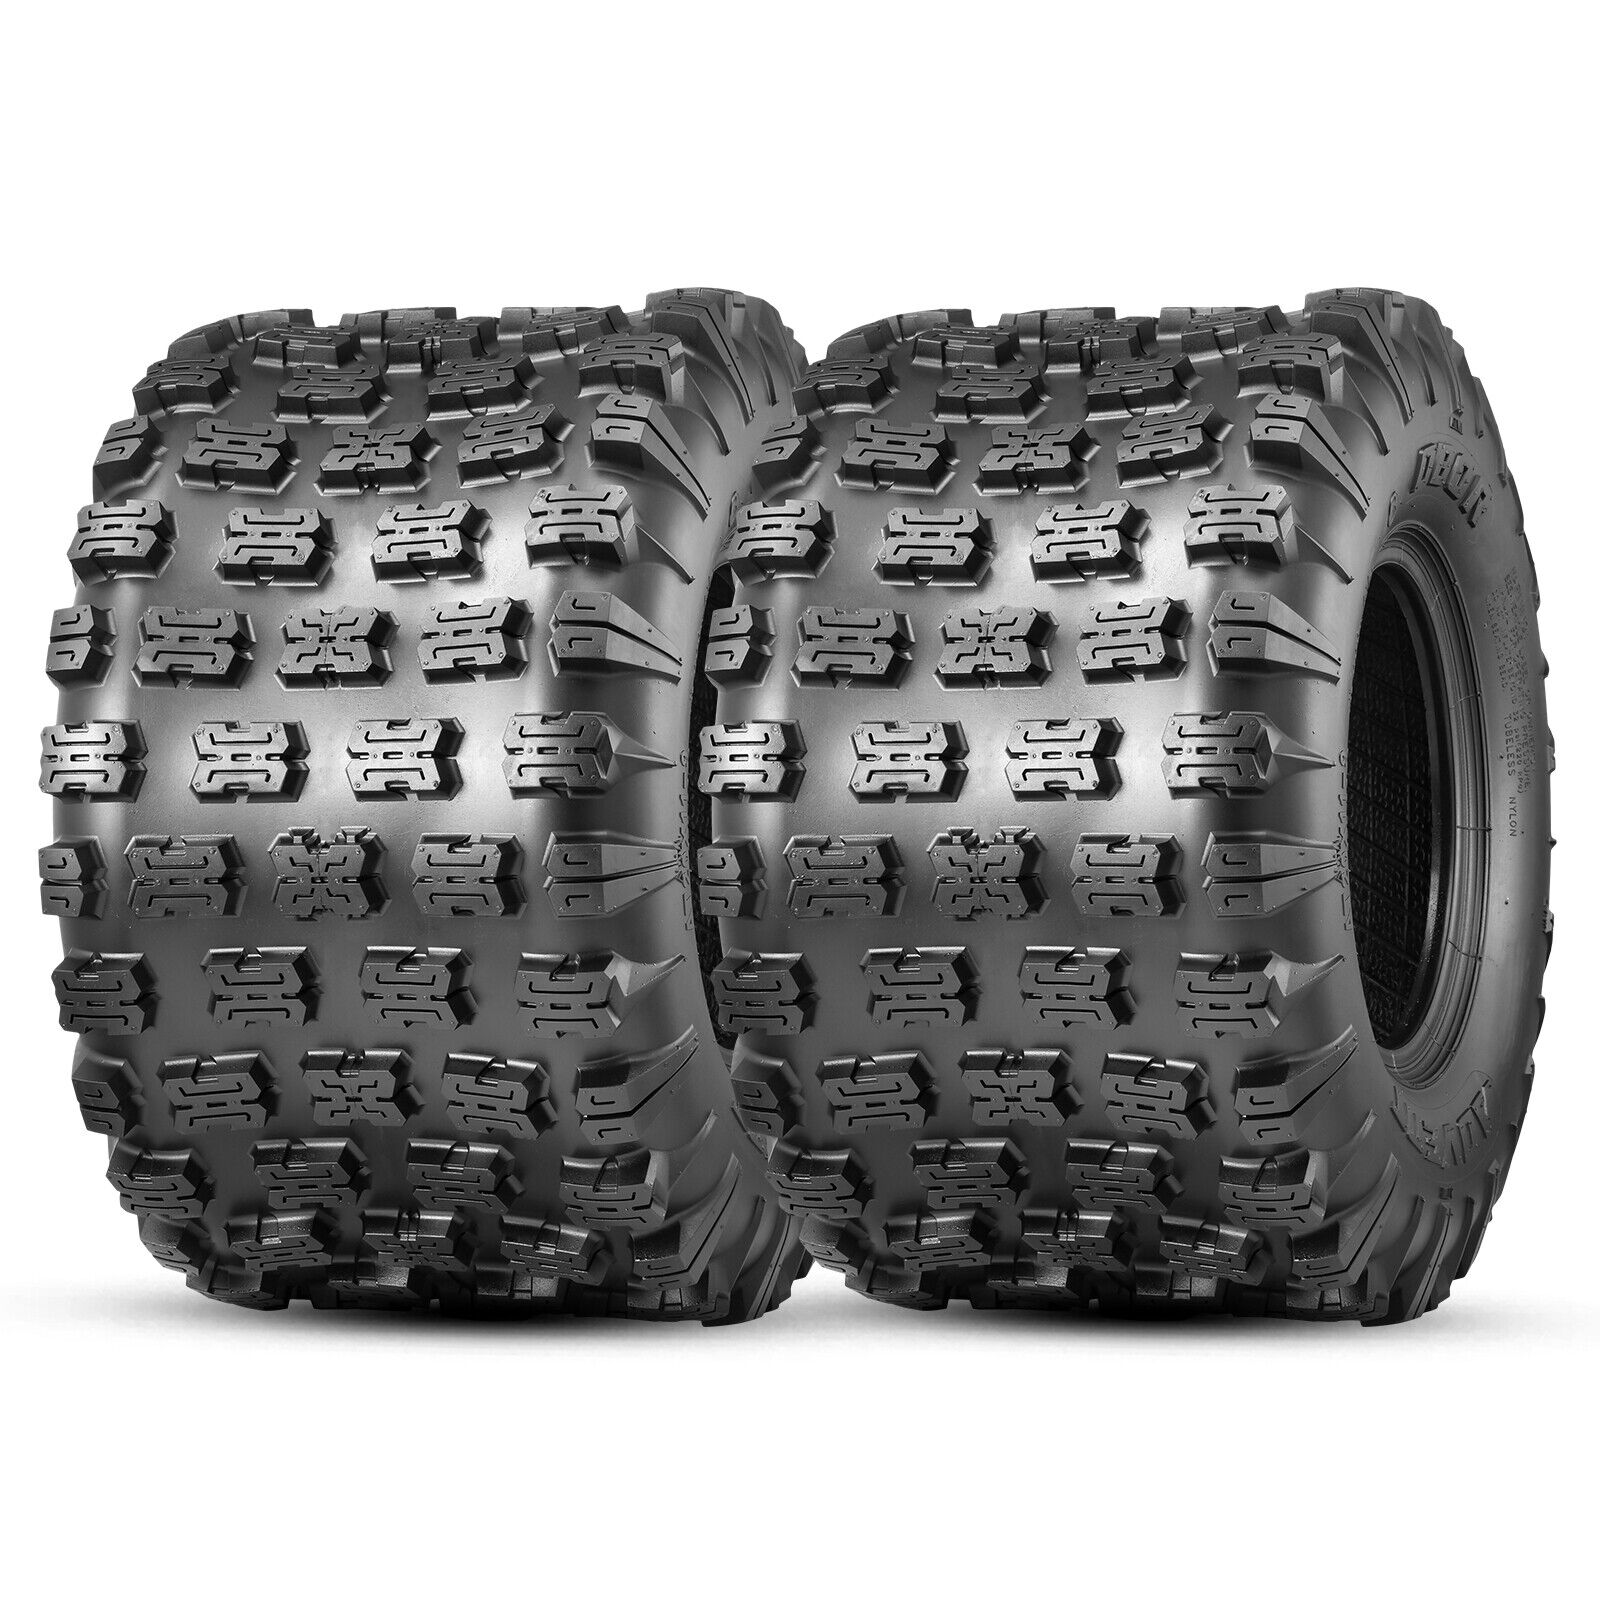 OBOR Advent 20x11-9 ATV Tires 6Ply Heavy Duty All Terrain GNCC Race Tyres Set 2